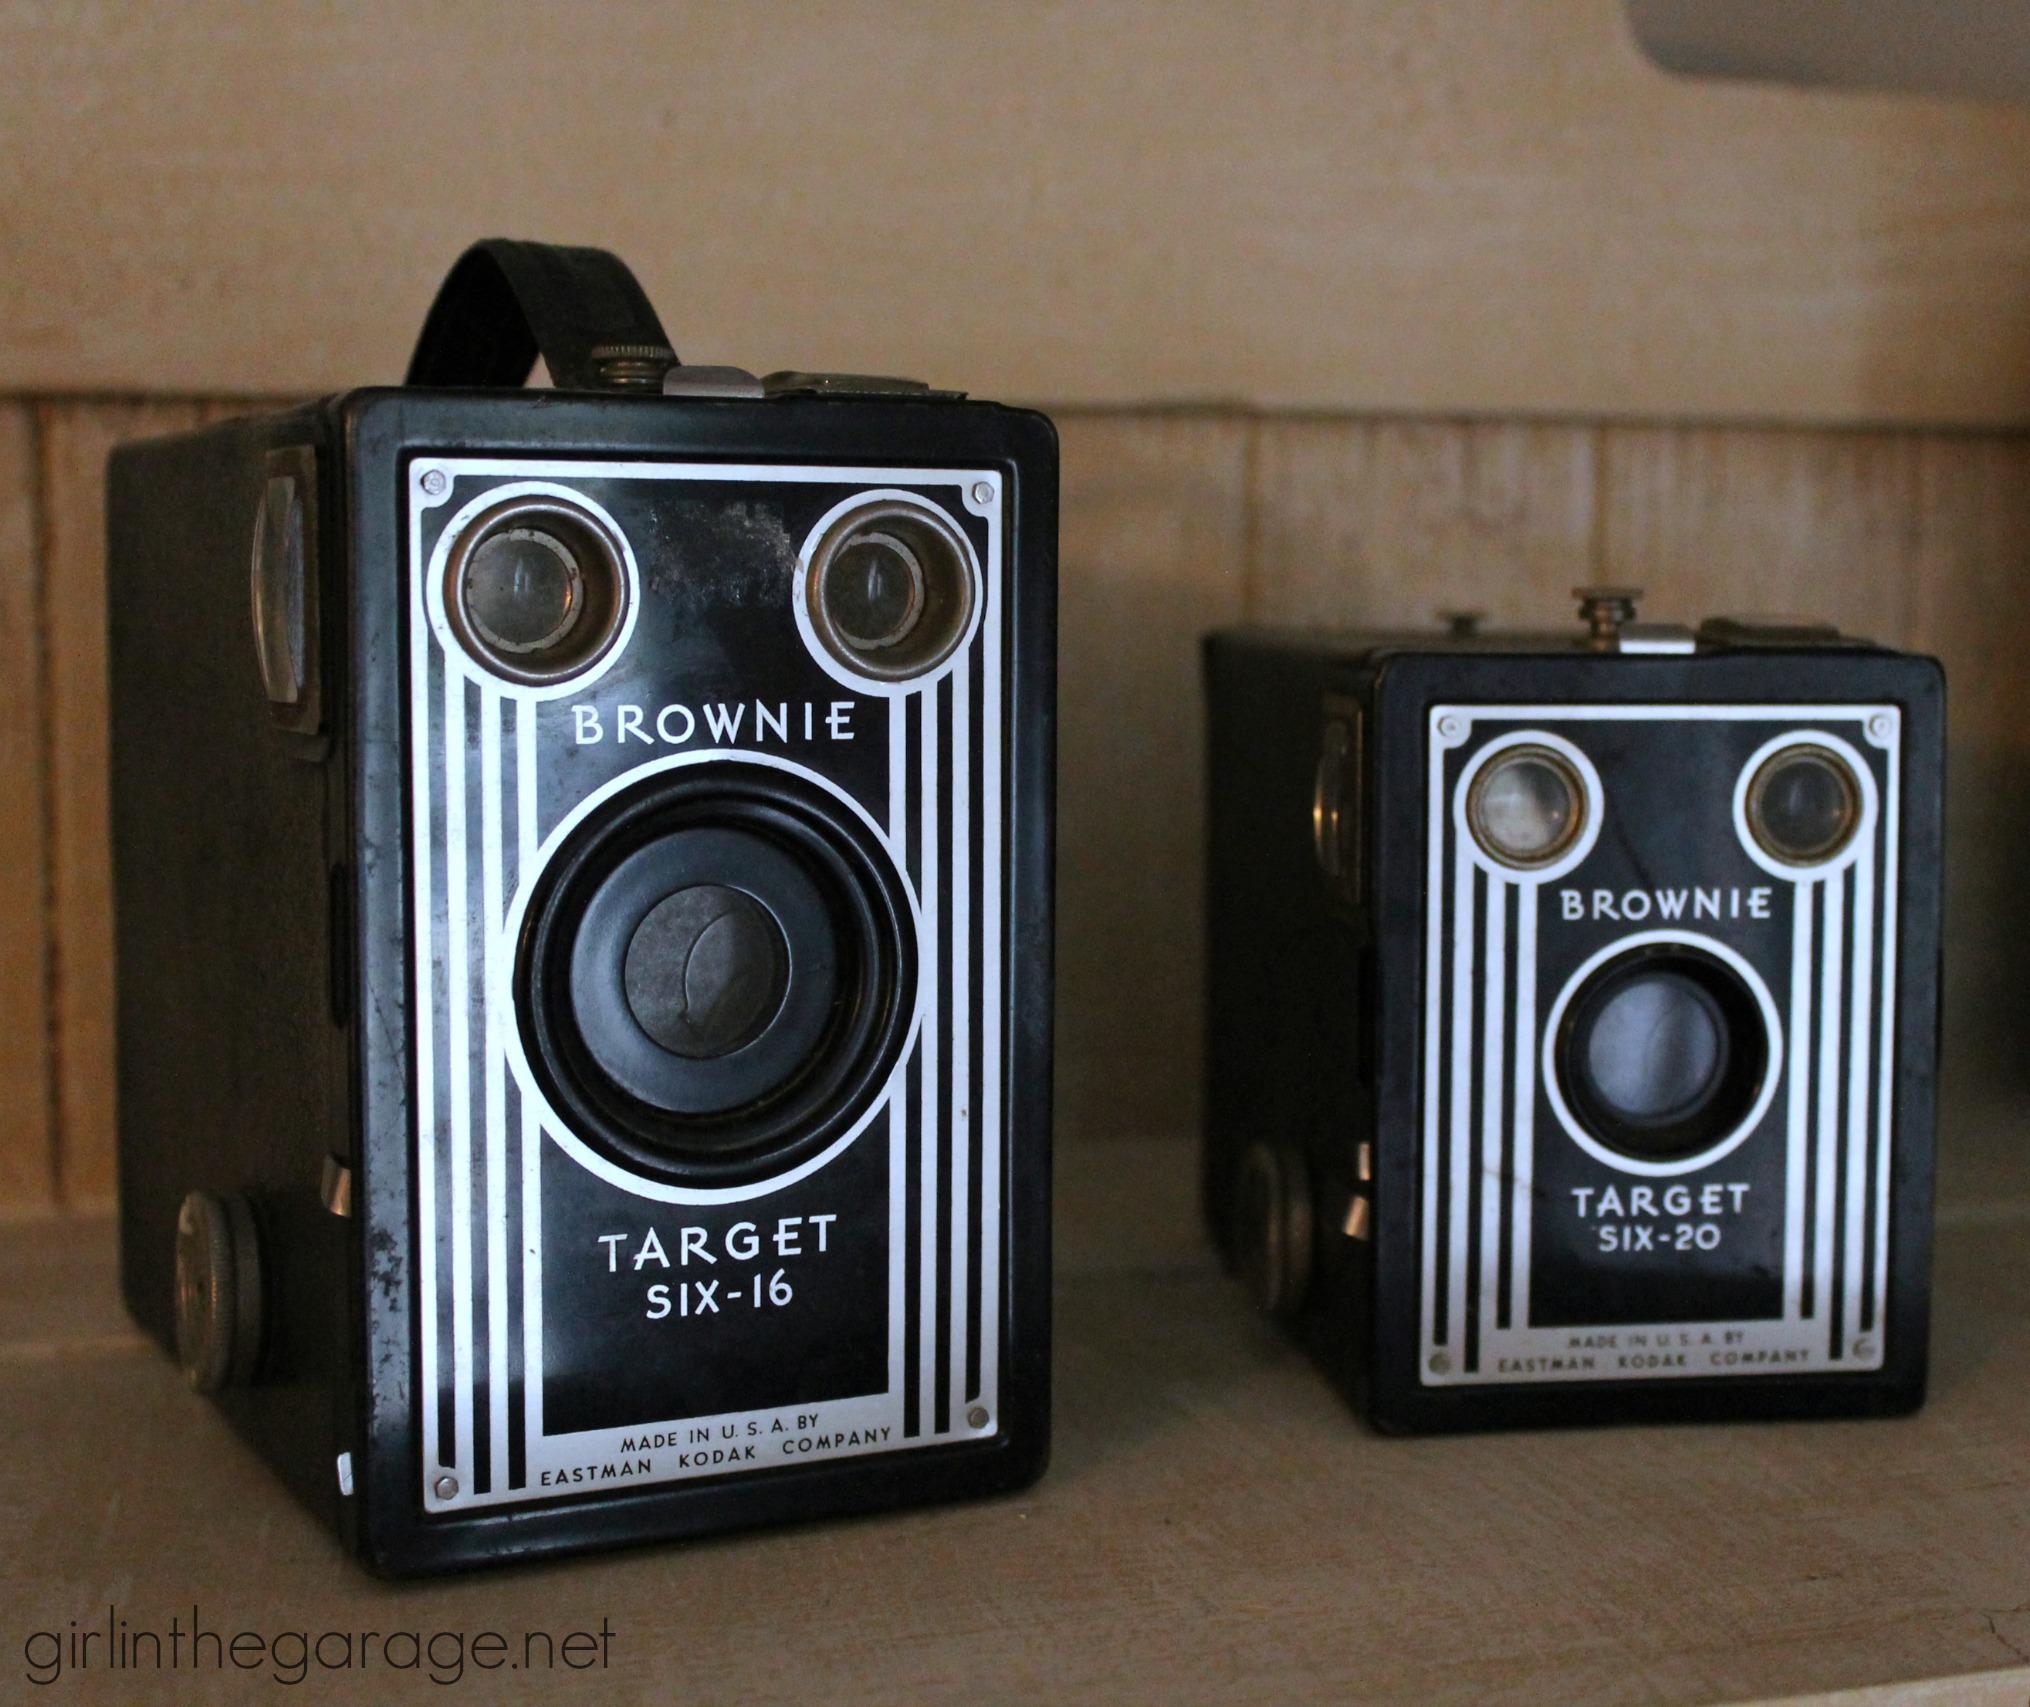 Vintage cameras photo